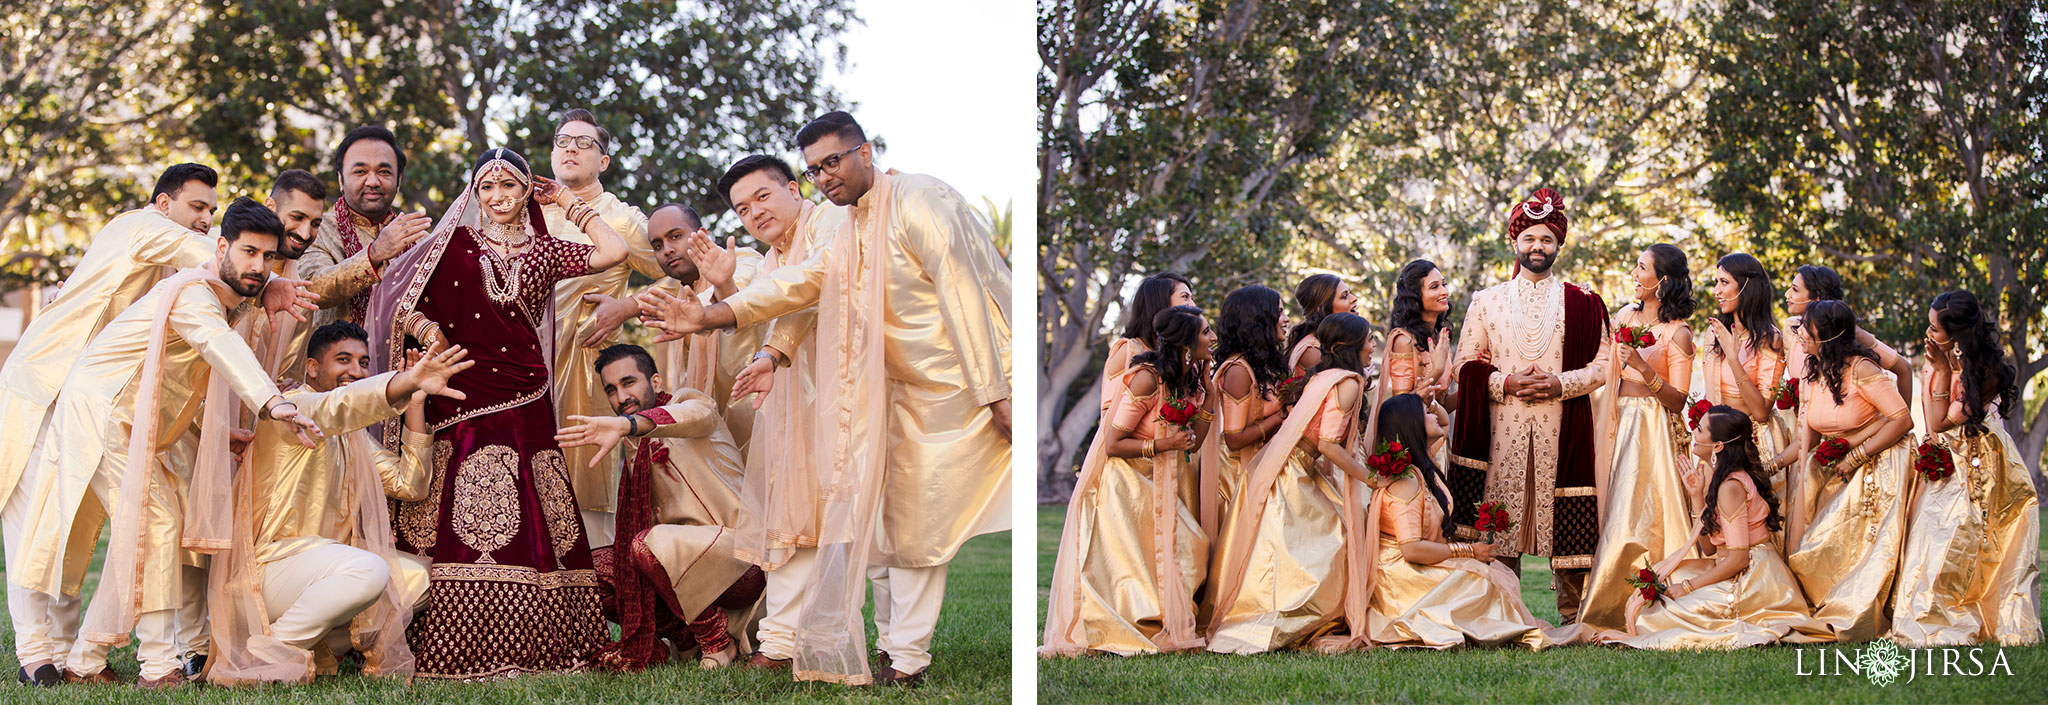 18 hotel irvine orange county indian wedding photography